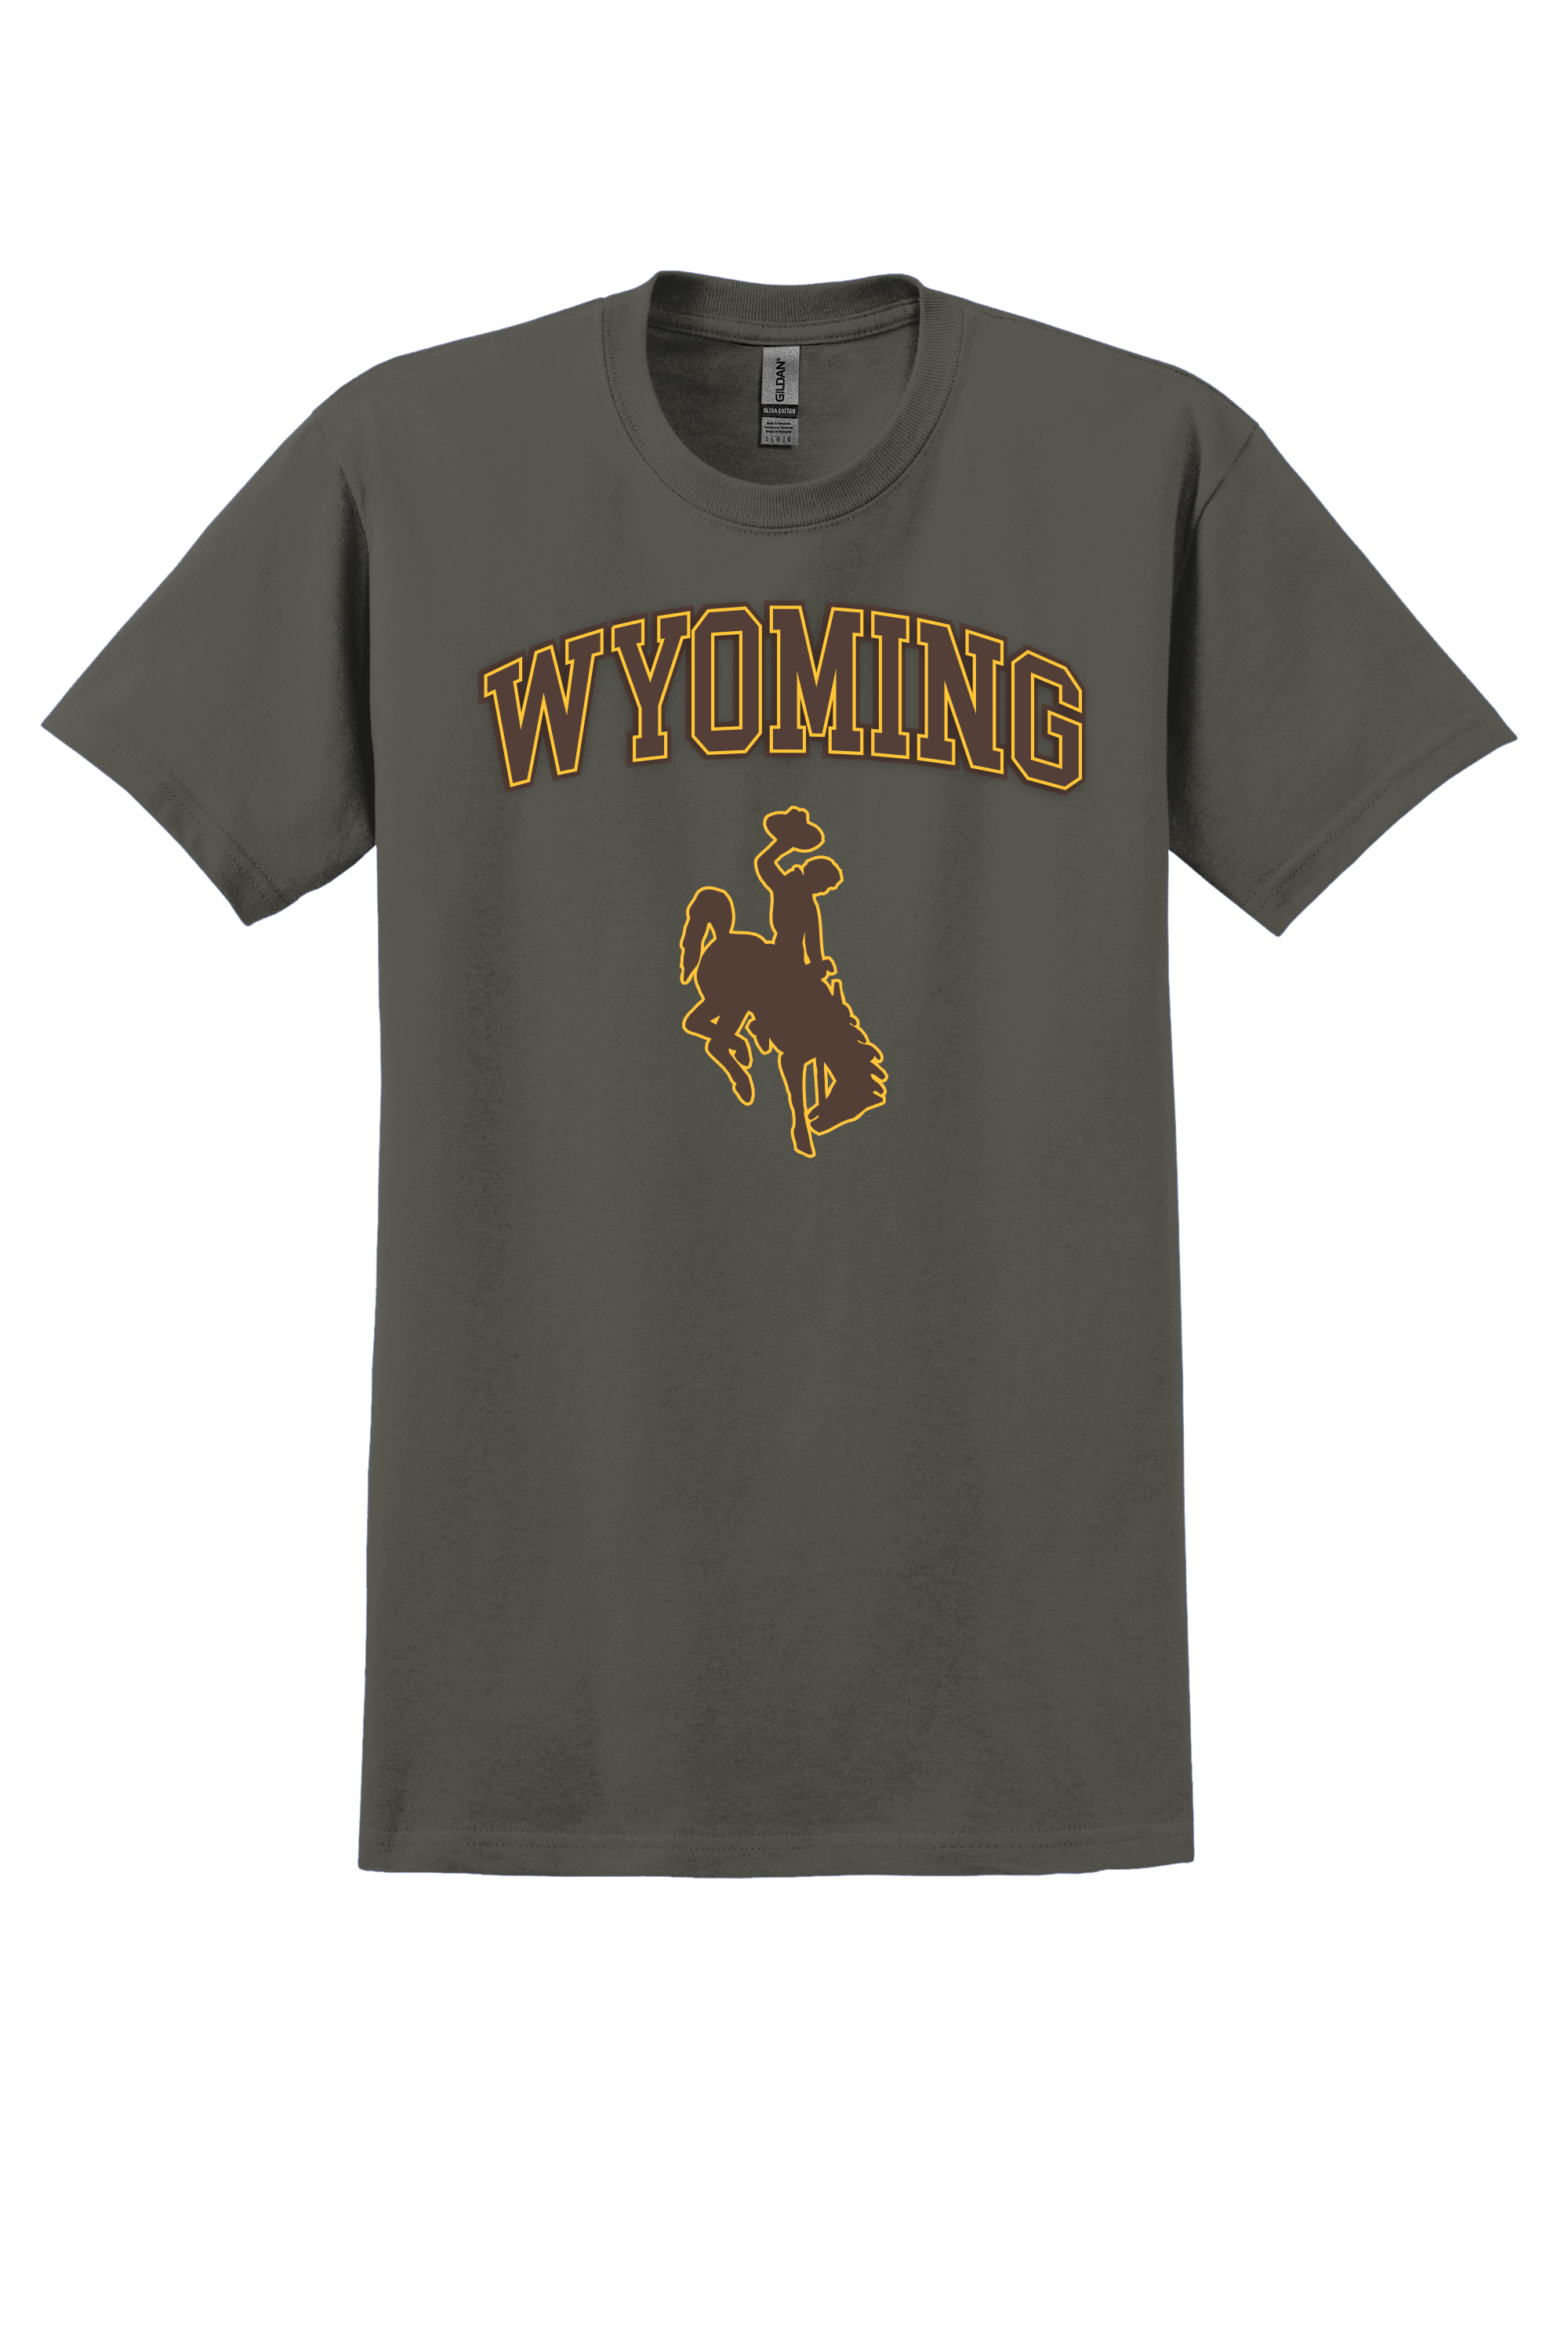  University of Wyoming T-shirt- Olive